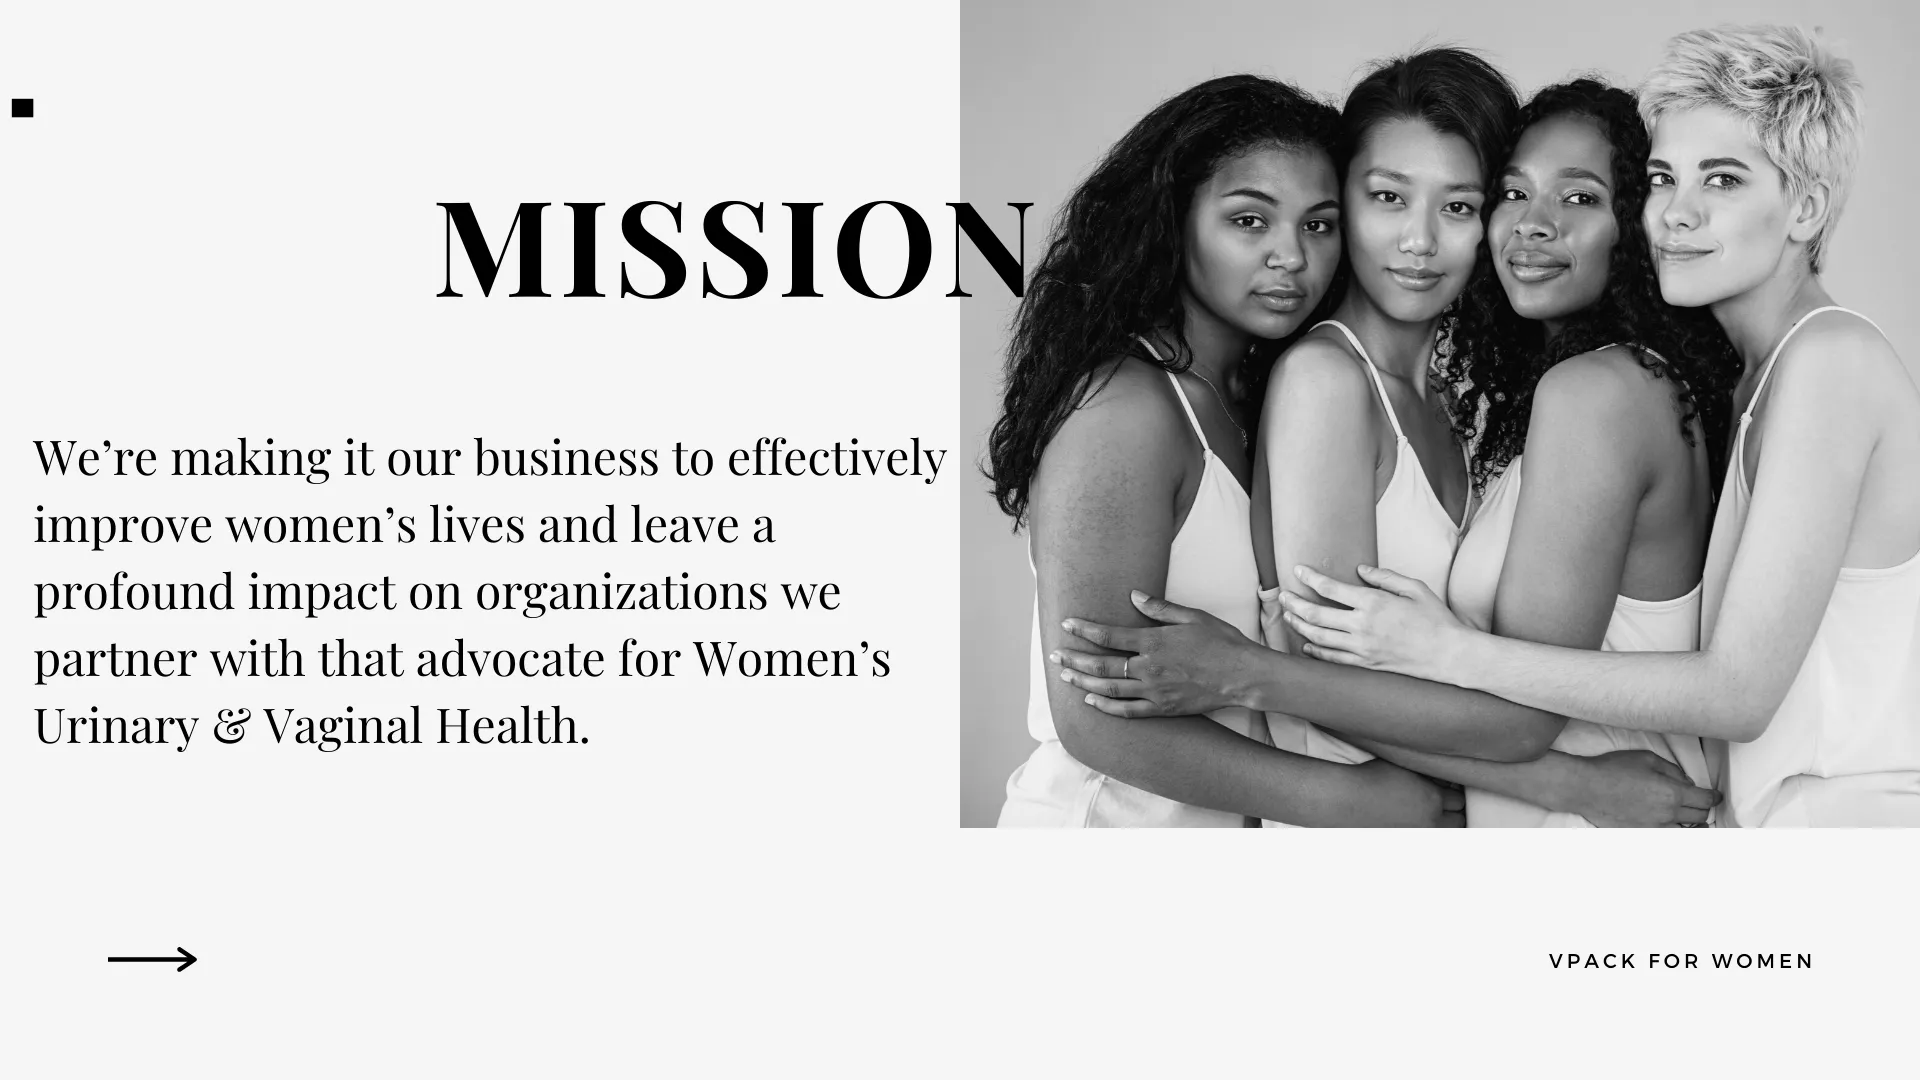 VPack for Women Mission